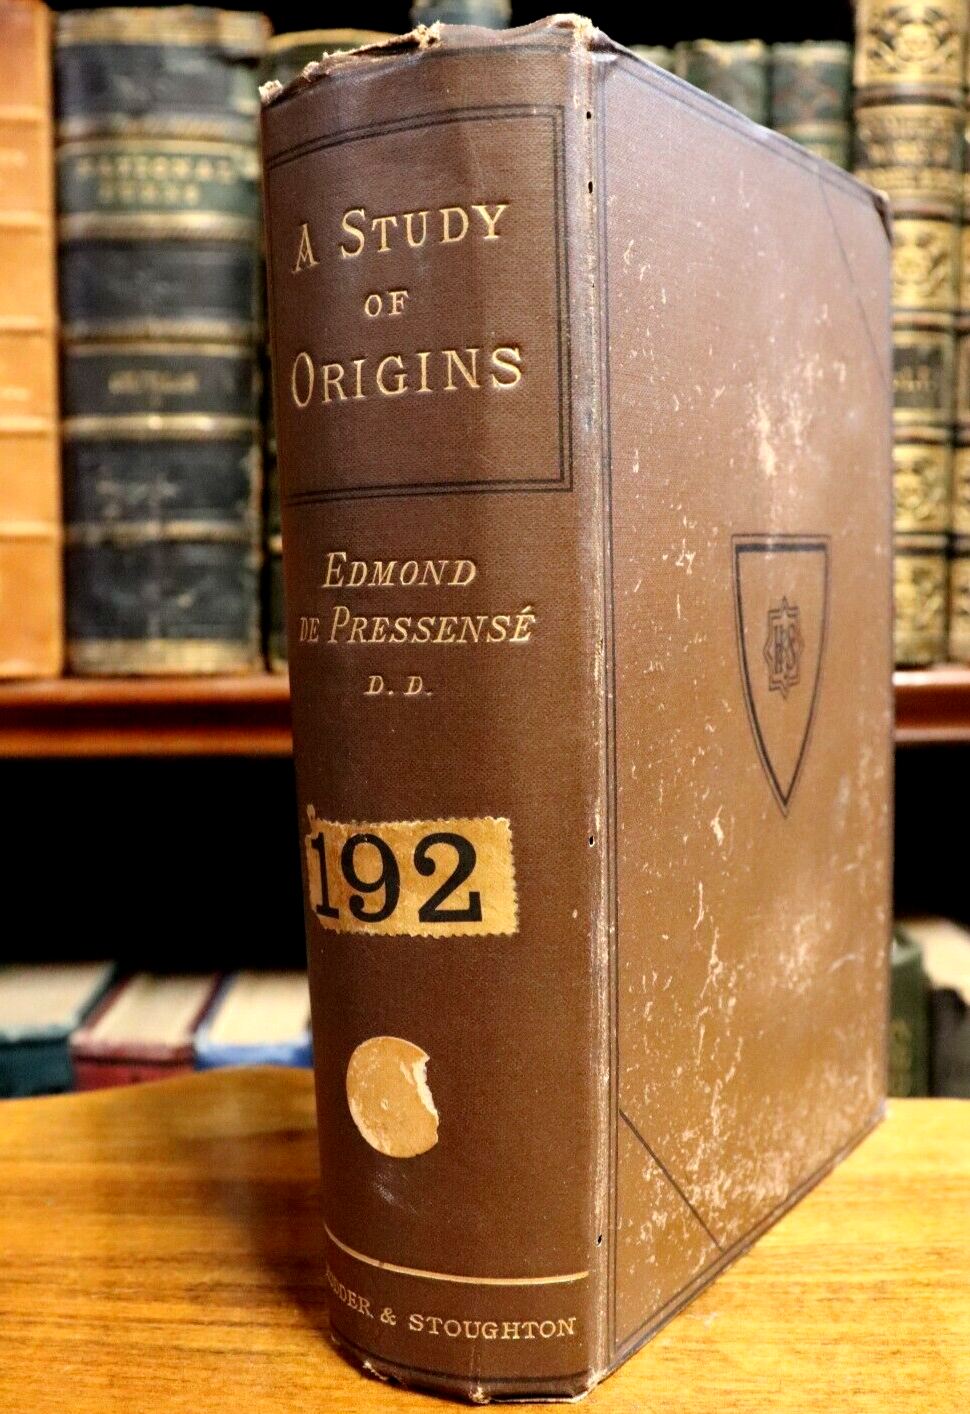 1883 A Study Of Origins by E De Pressense' 1st Edition Antique Theology Book